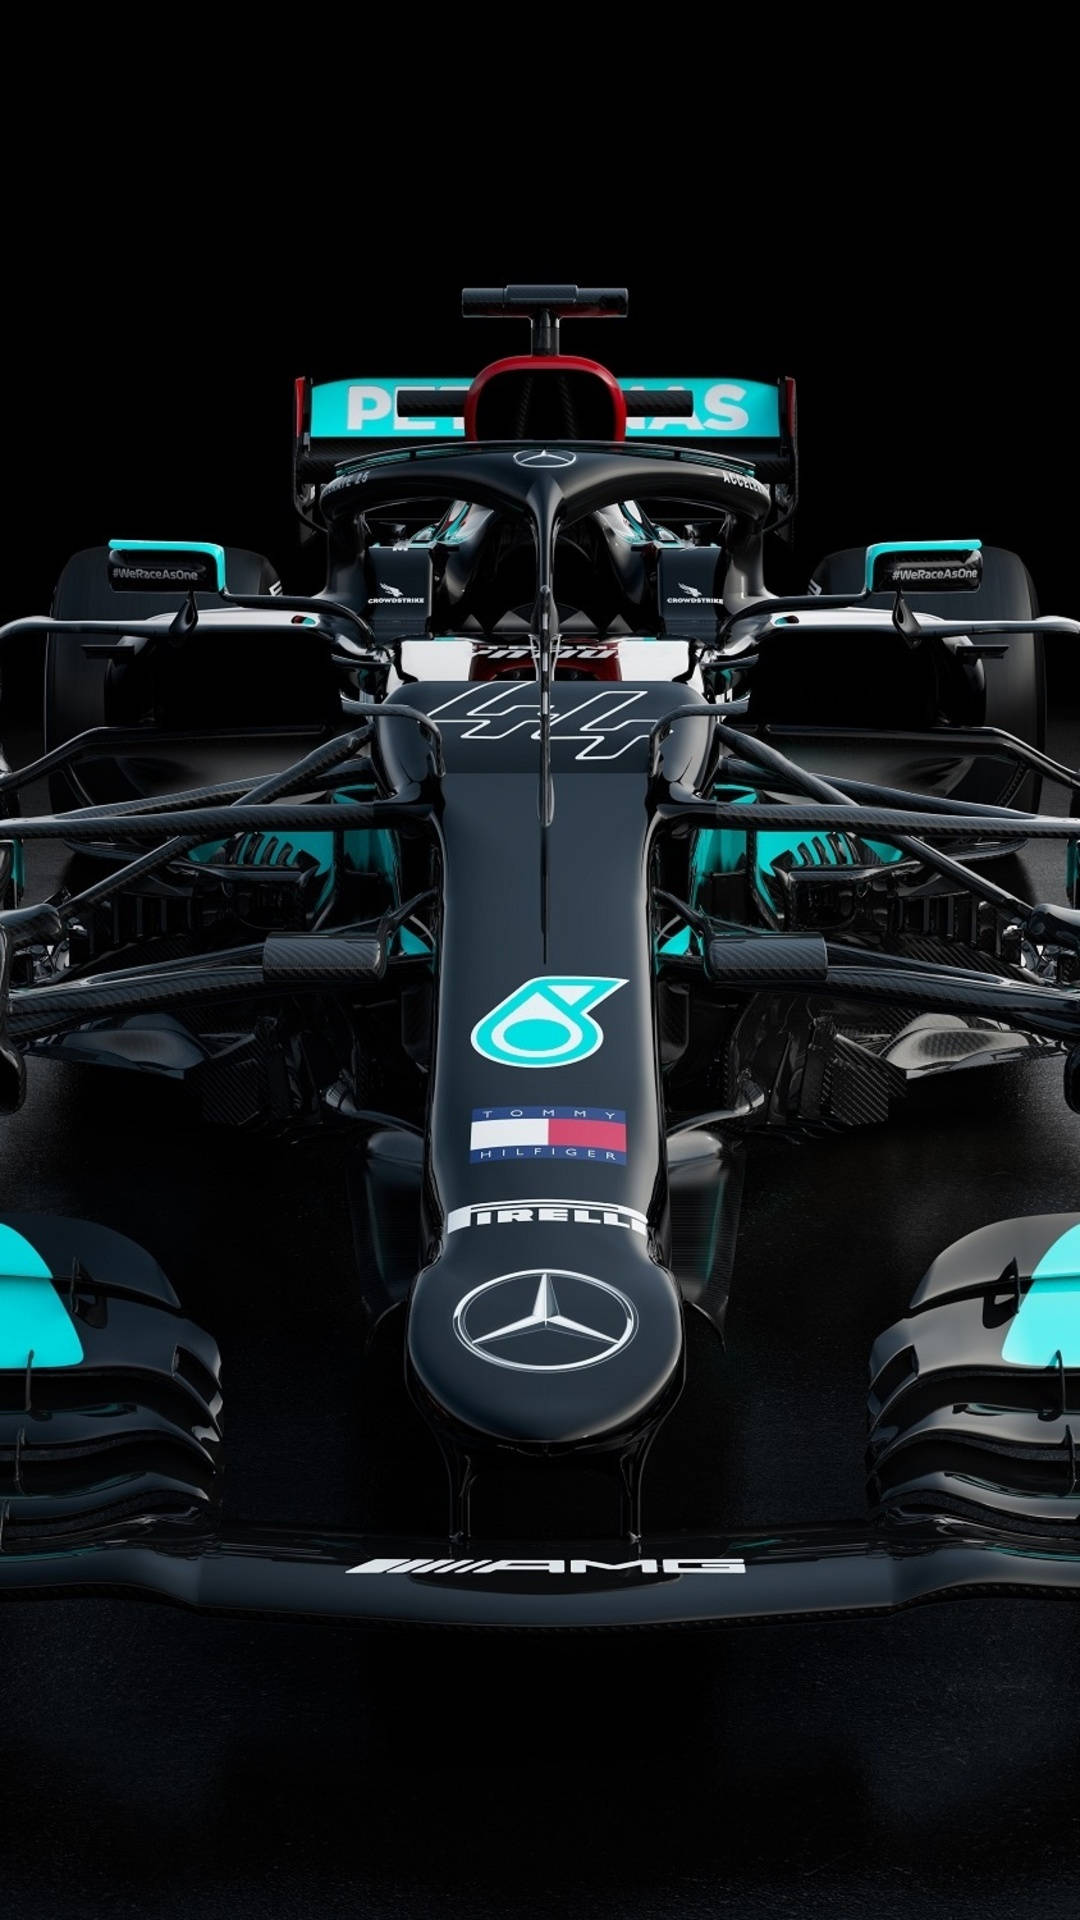 Kom i den hurtige bane med Mercedes F1 iPhone tapet. Wallpaper